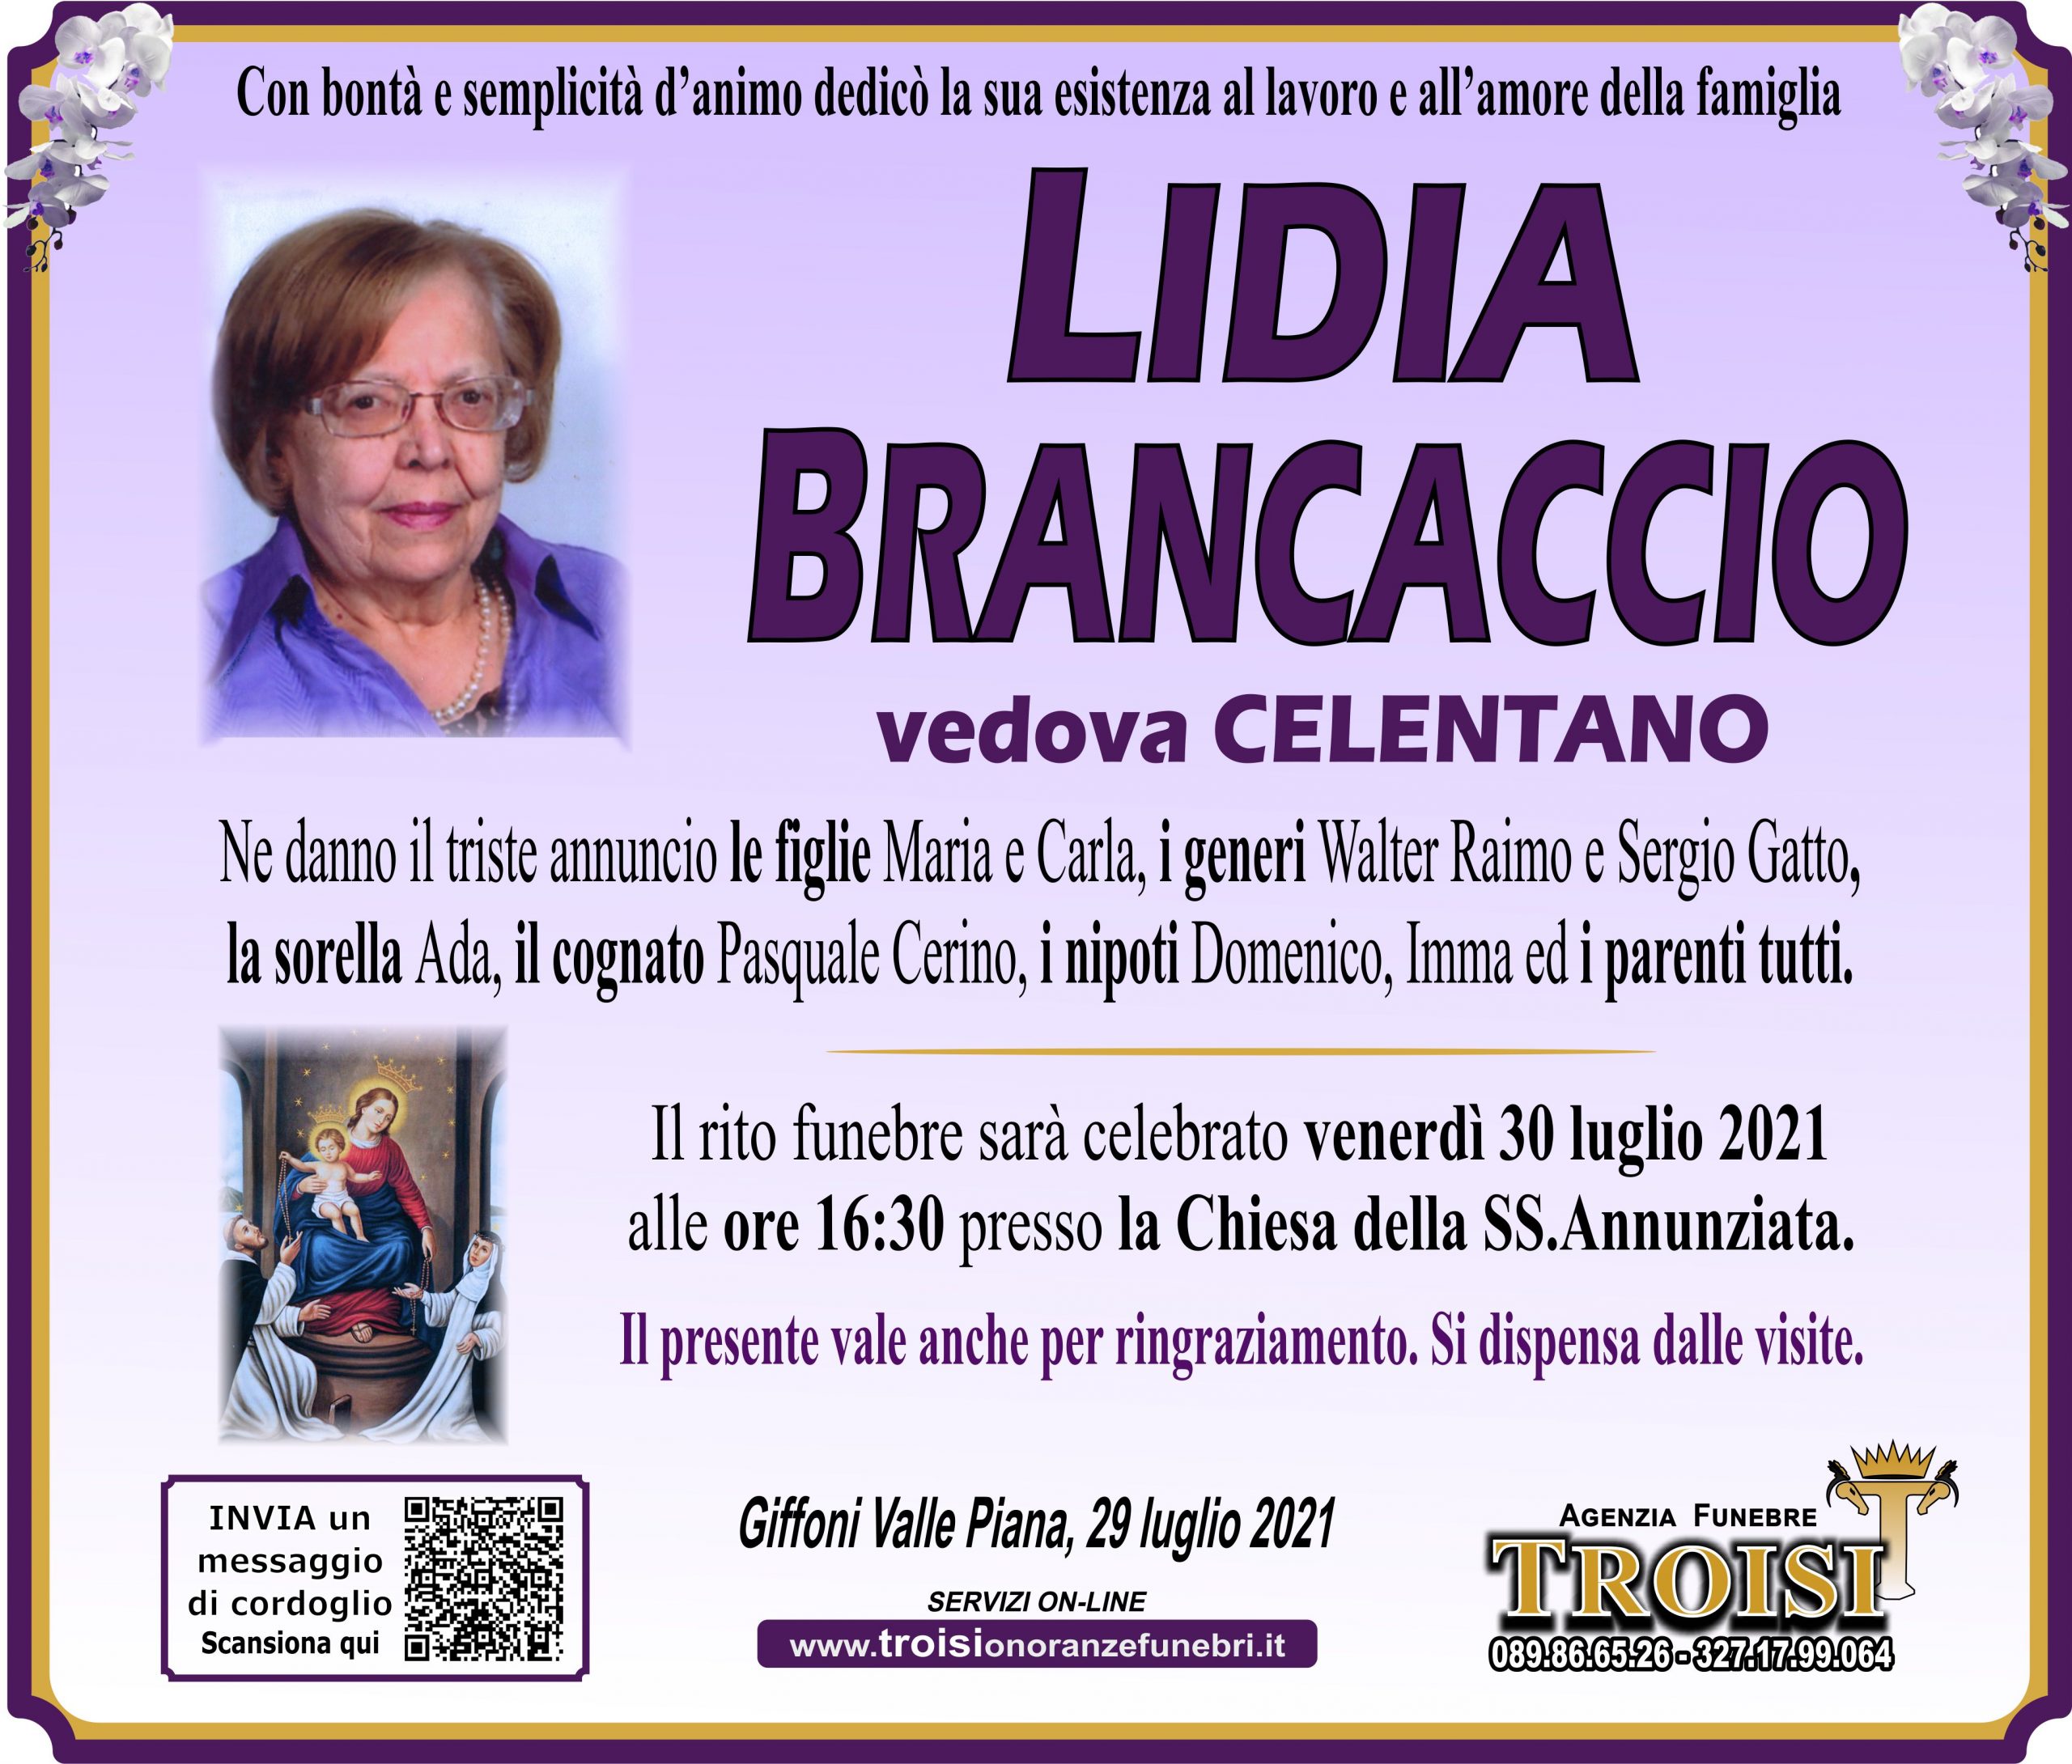 LIDIA BRANCACCIO